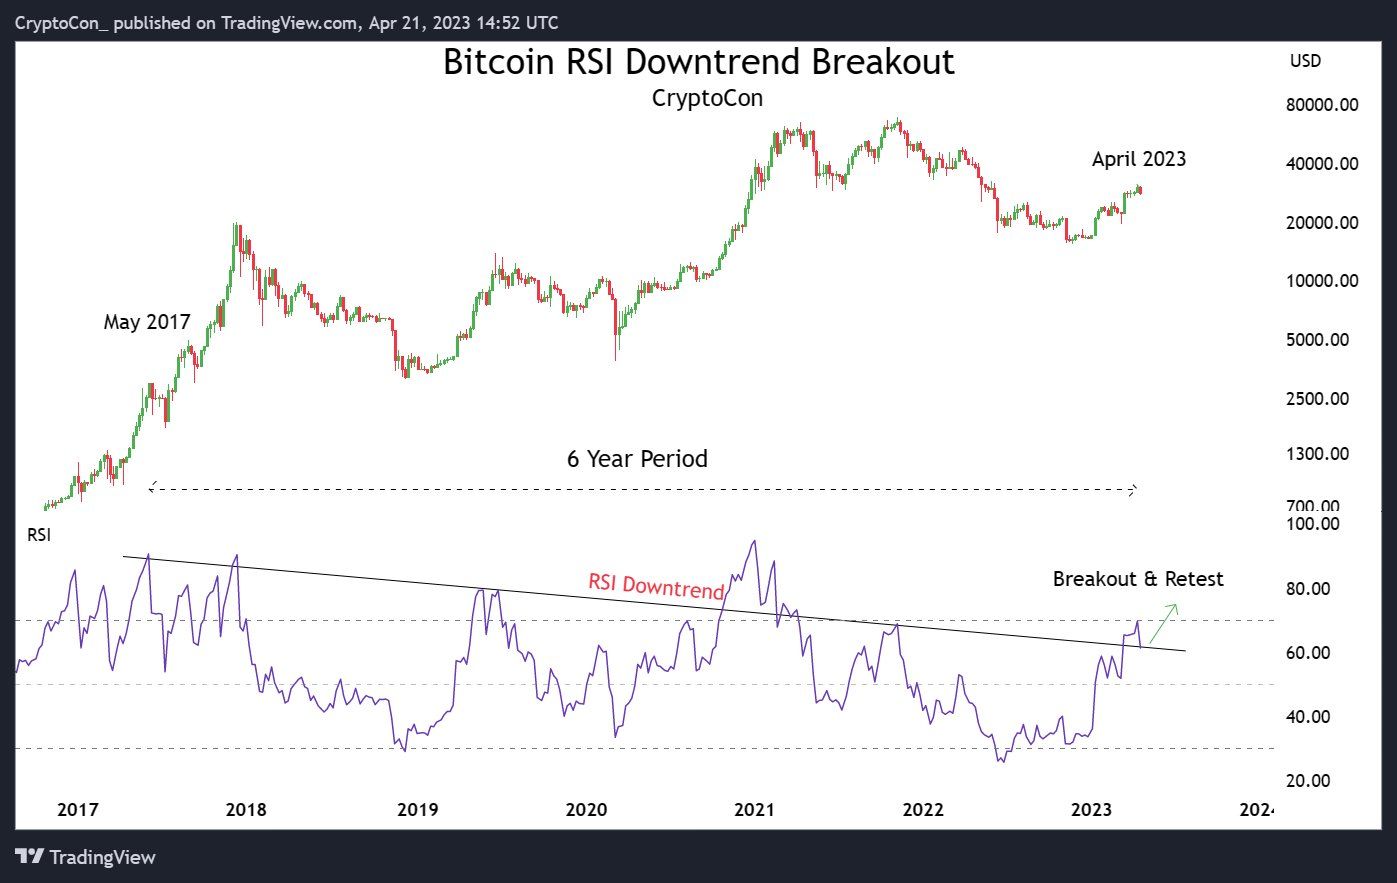 Graf ceny bitcoinu a RSI. Je vidět dlouhotrvající klesající trend indexu. Mááme konečně prolomení? (zdroj: Twitter / @CryptoCon / TradingView.com).